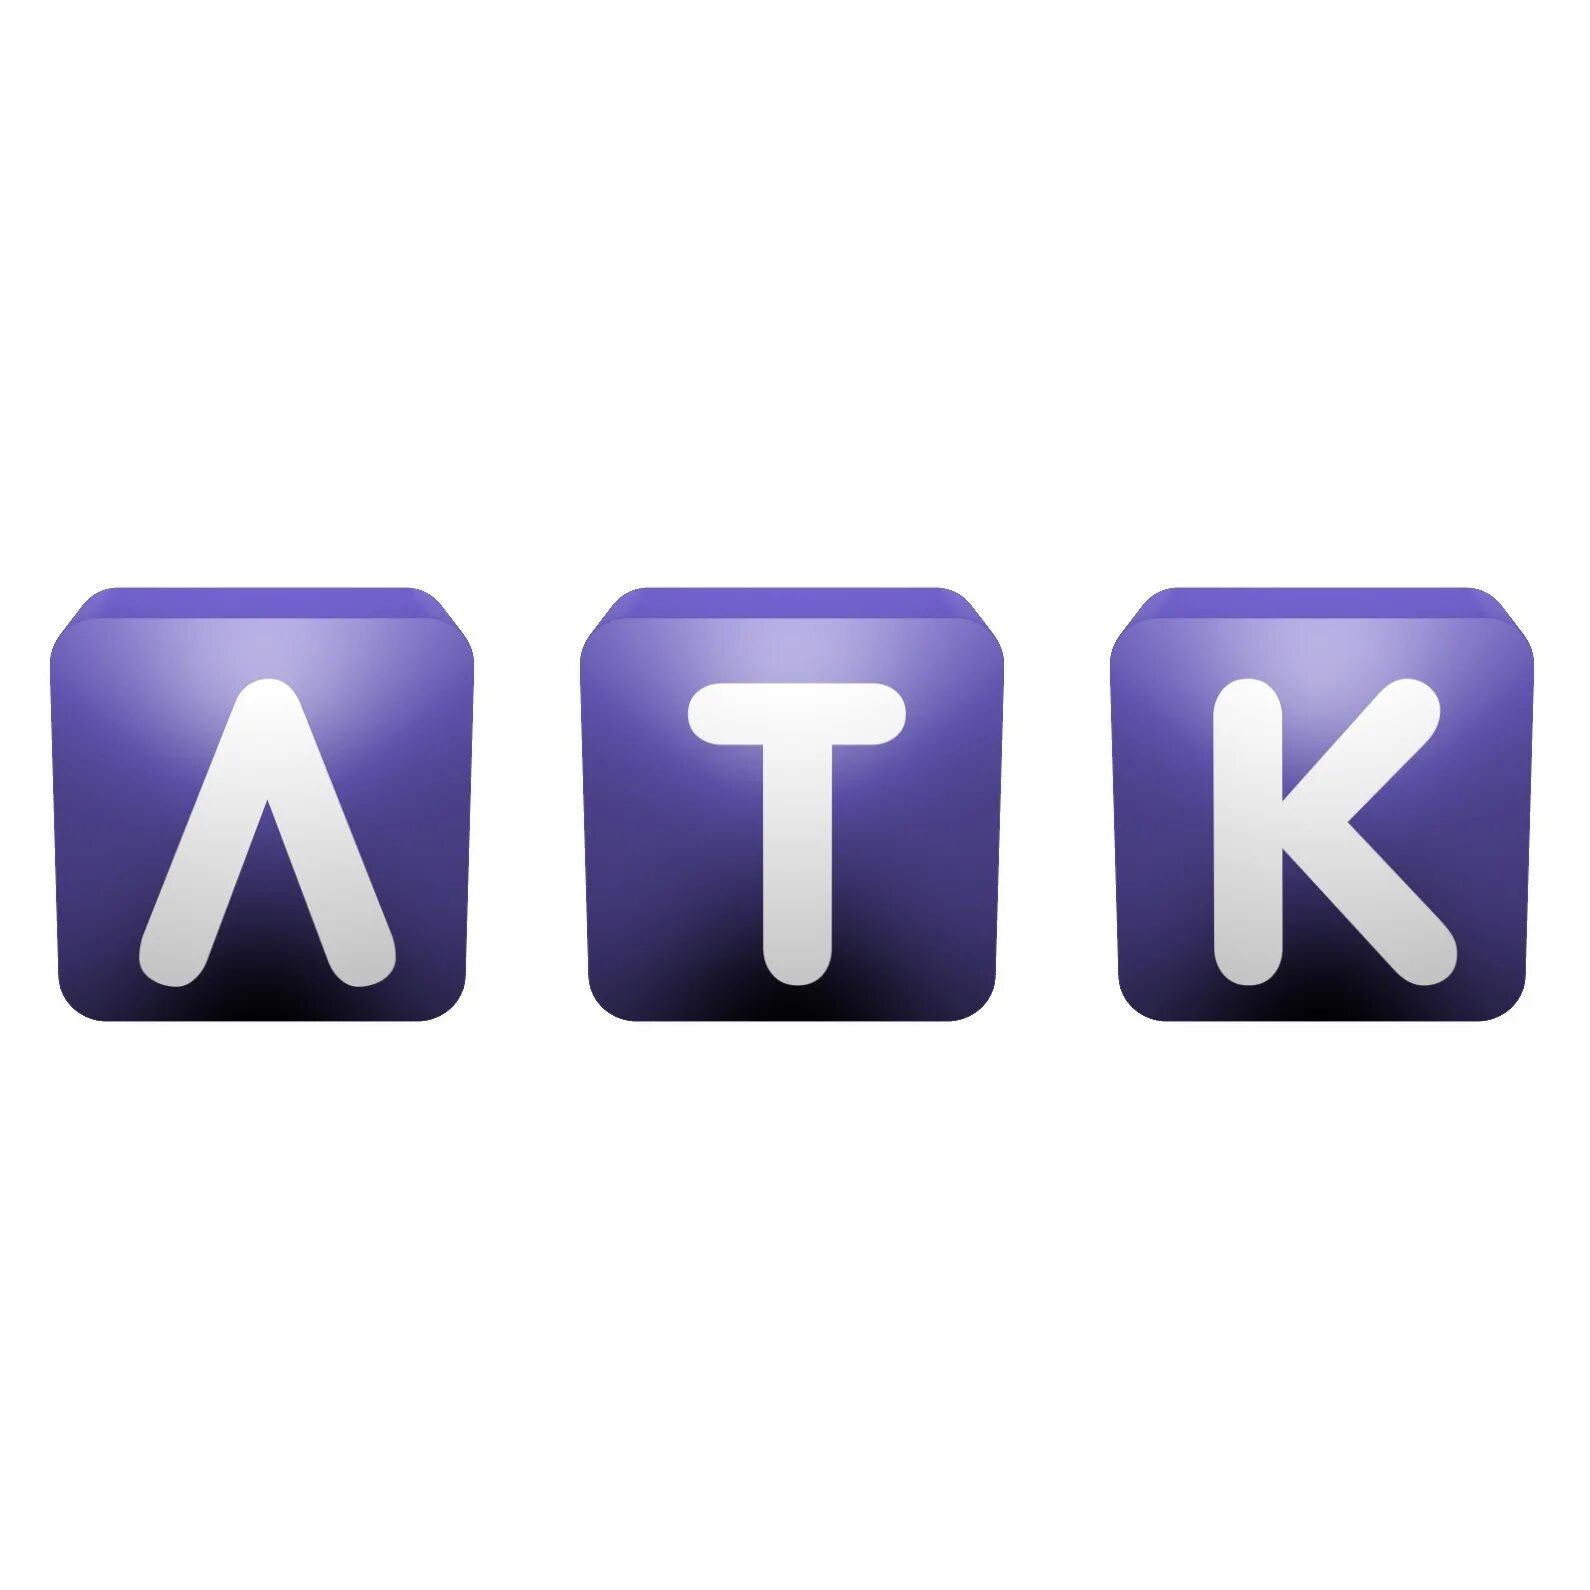 Channel vk. ЛТК логотип. Лысьва логотип. ЛТК Лысьва. Логотип Луганская телефонная компания.